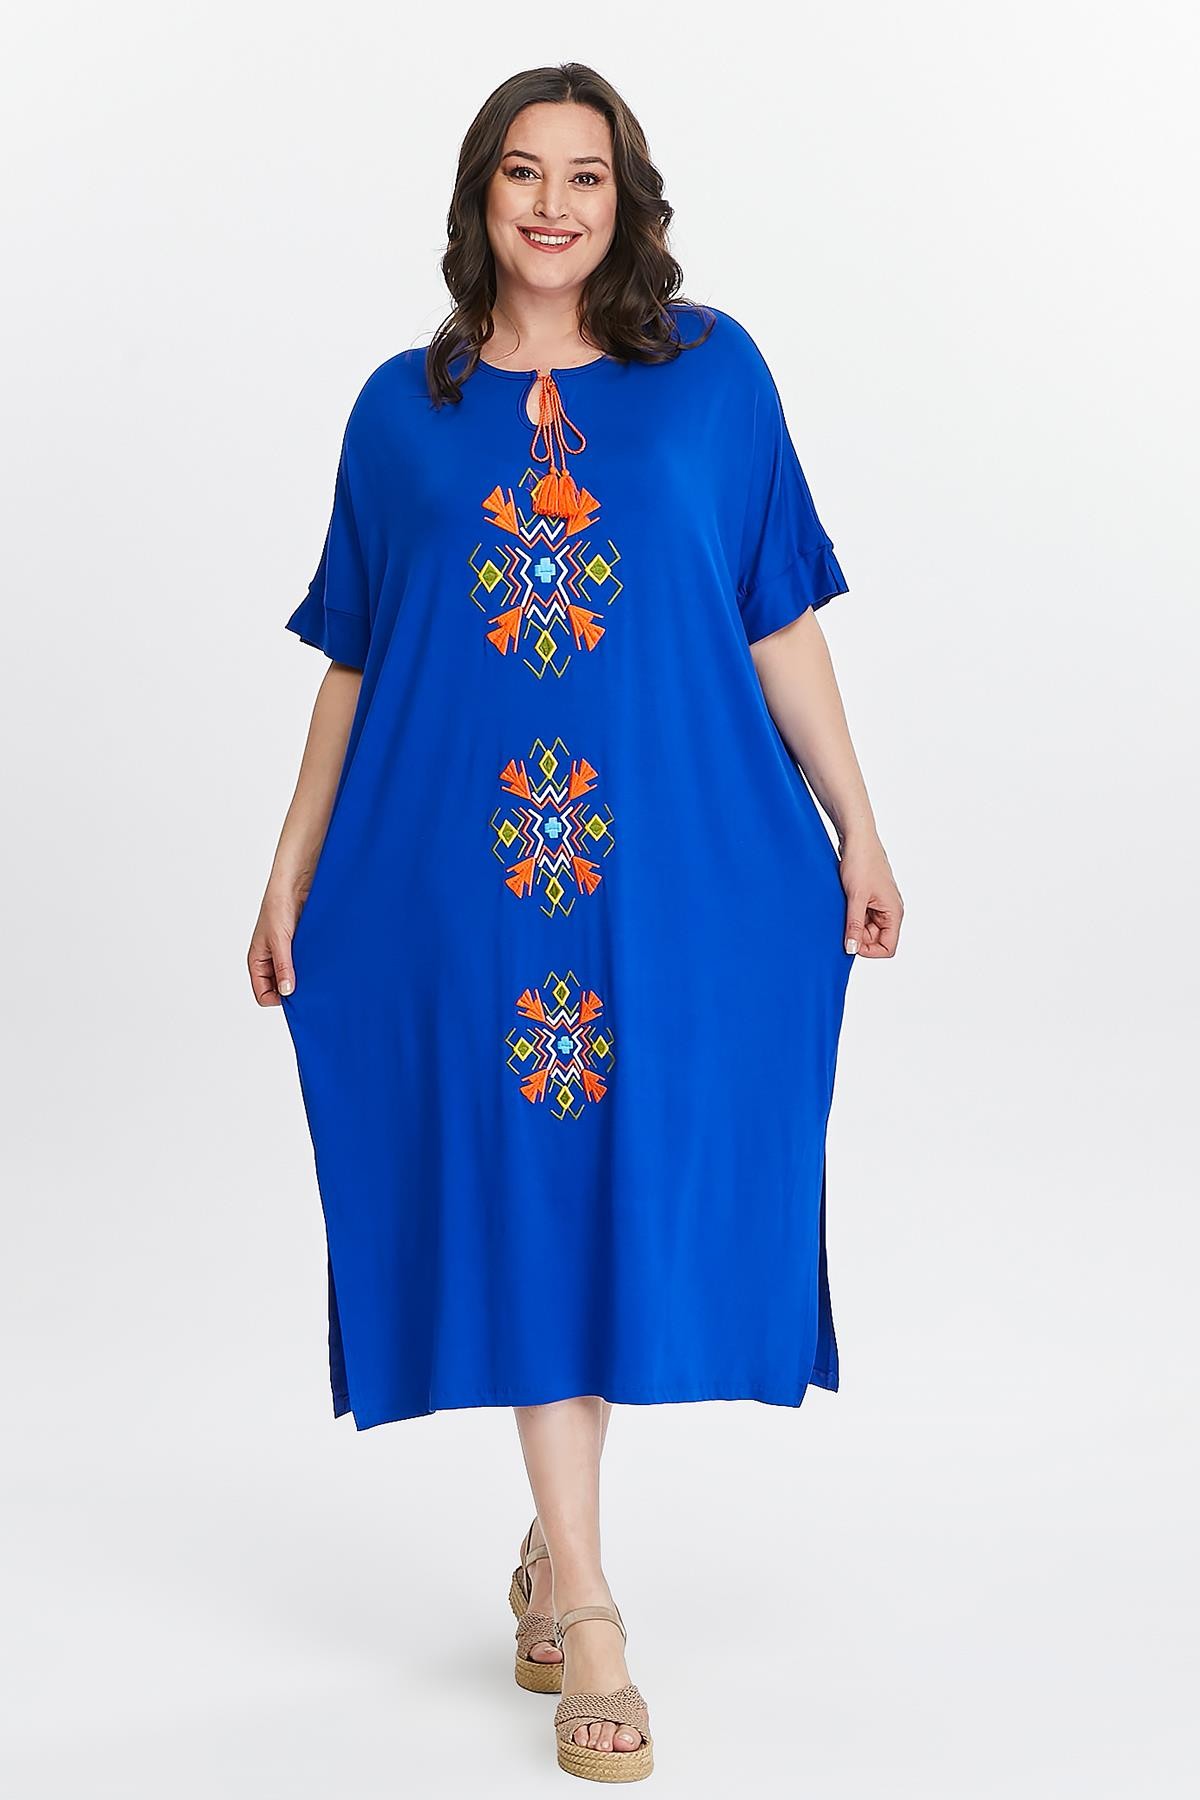 Kadın Büyük Beden Ekstra Rahat Kalıp Önü Nakışlı Elbise - Mavi